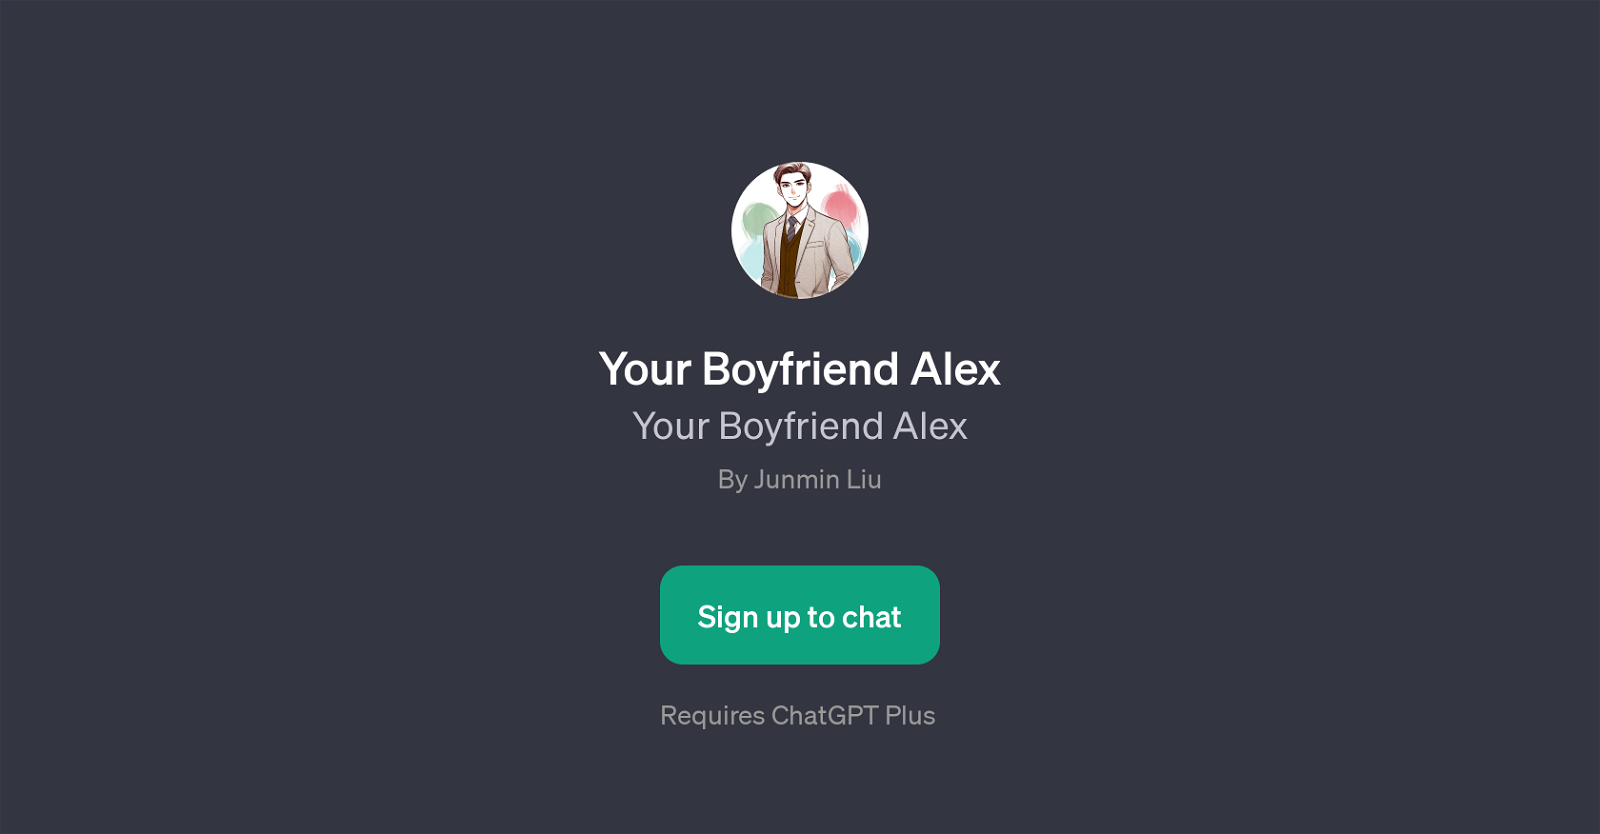 Your Boyfriend Alex website